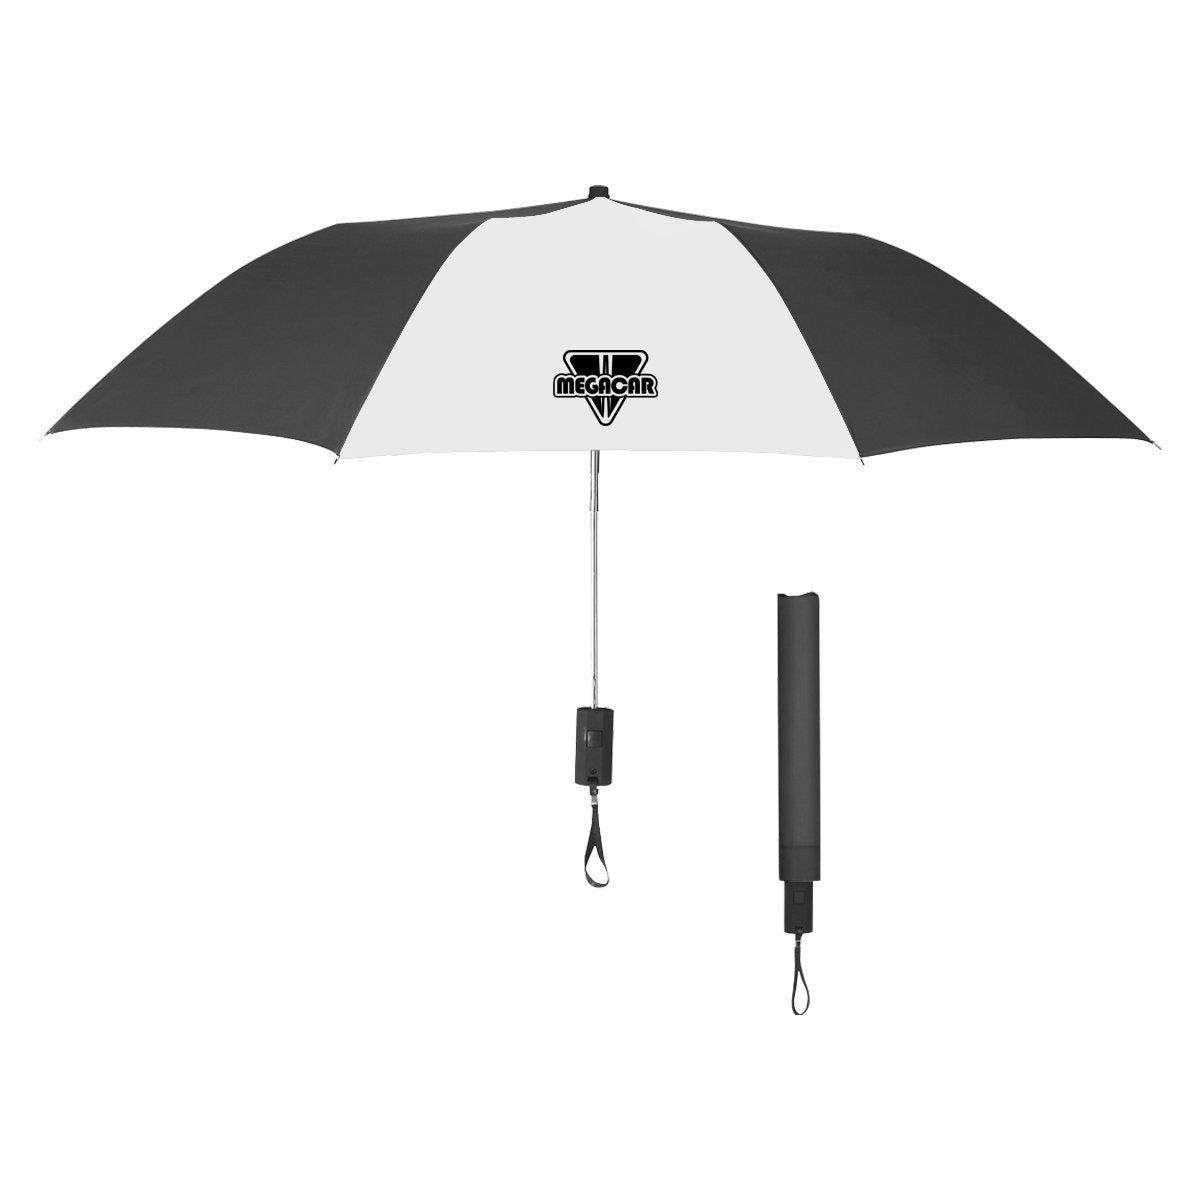 44" Arc Automatic Open Telescopic Folding Umbrella Black/White Multi Color 